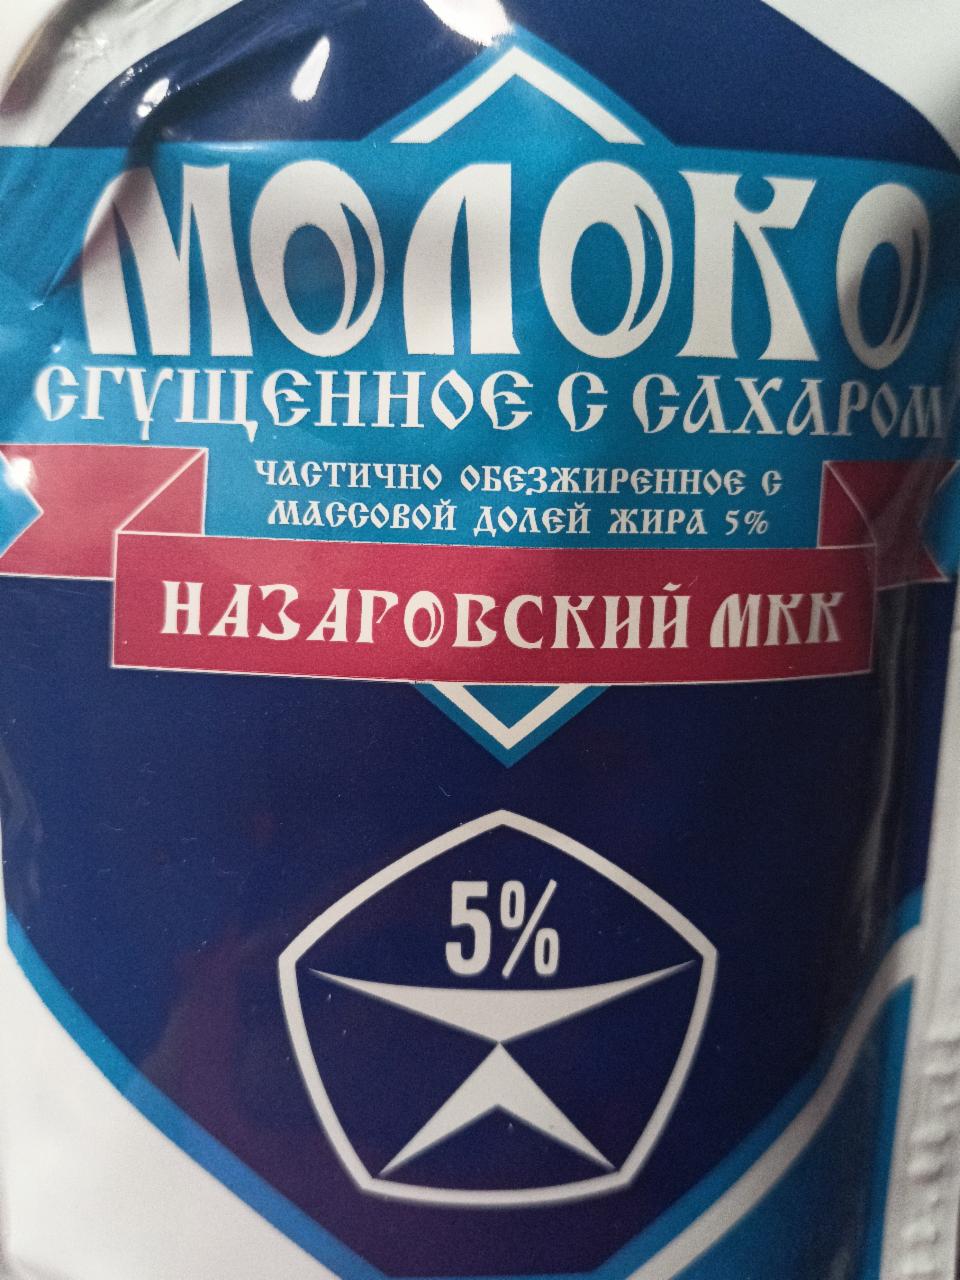 Фото - сгущённое молоко Назаровский мкк